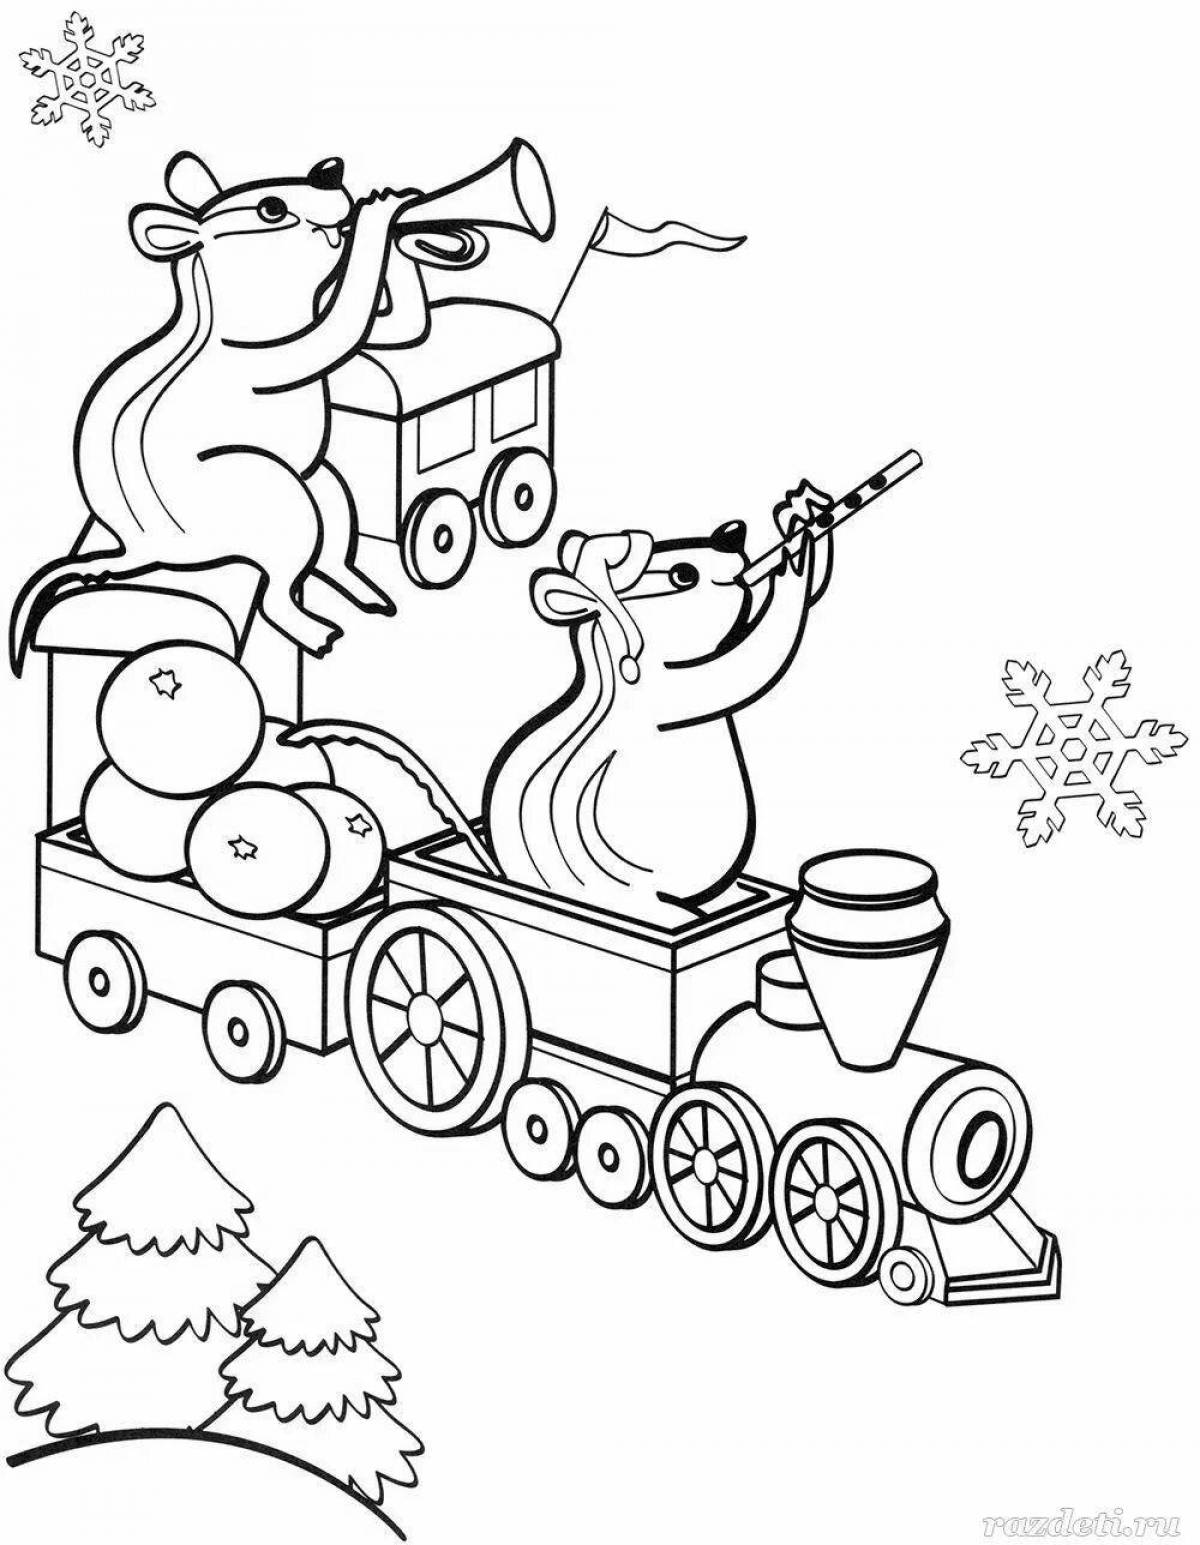 Humorous Christmas car coloring book